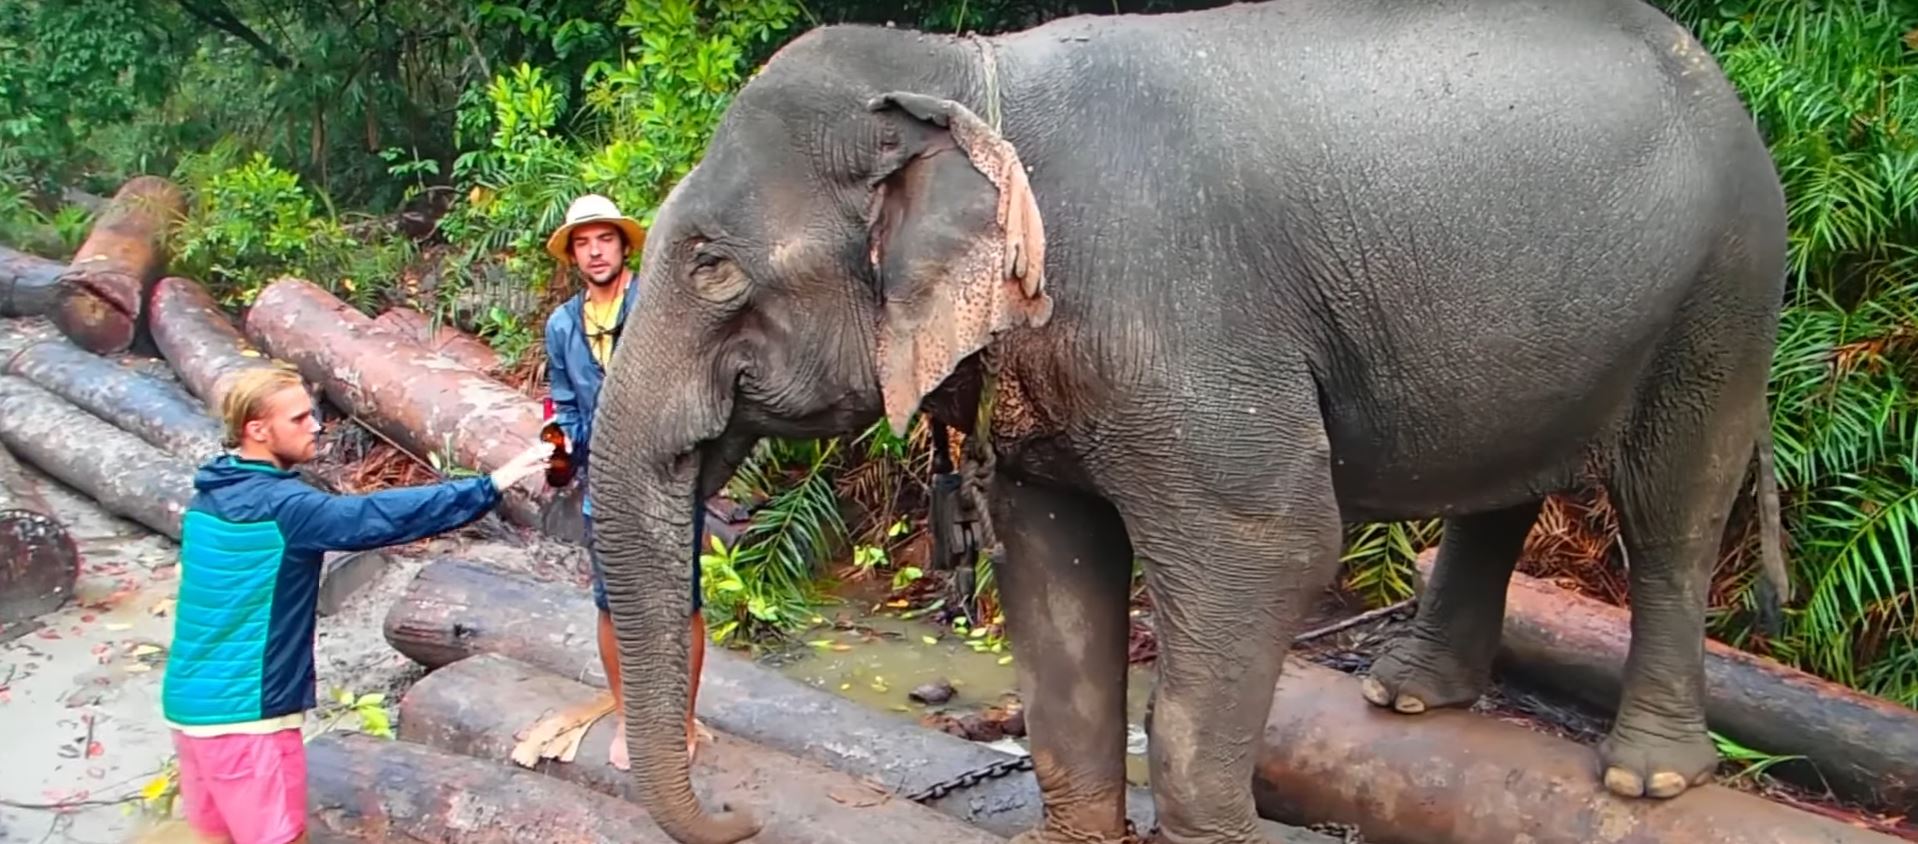 wild elephants exploring remote india